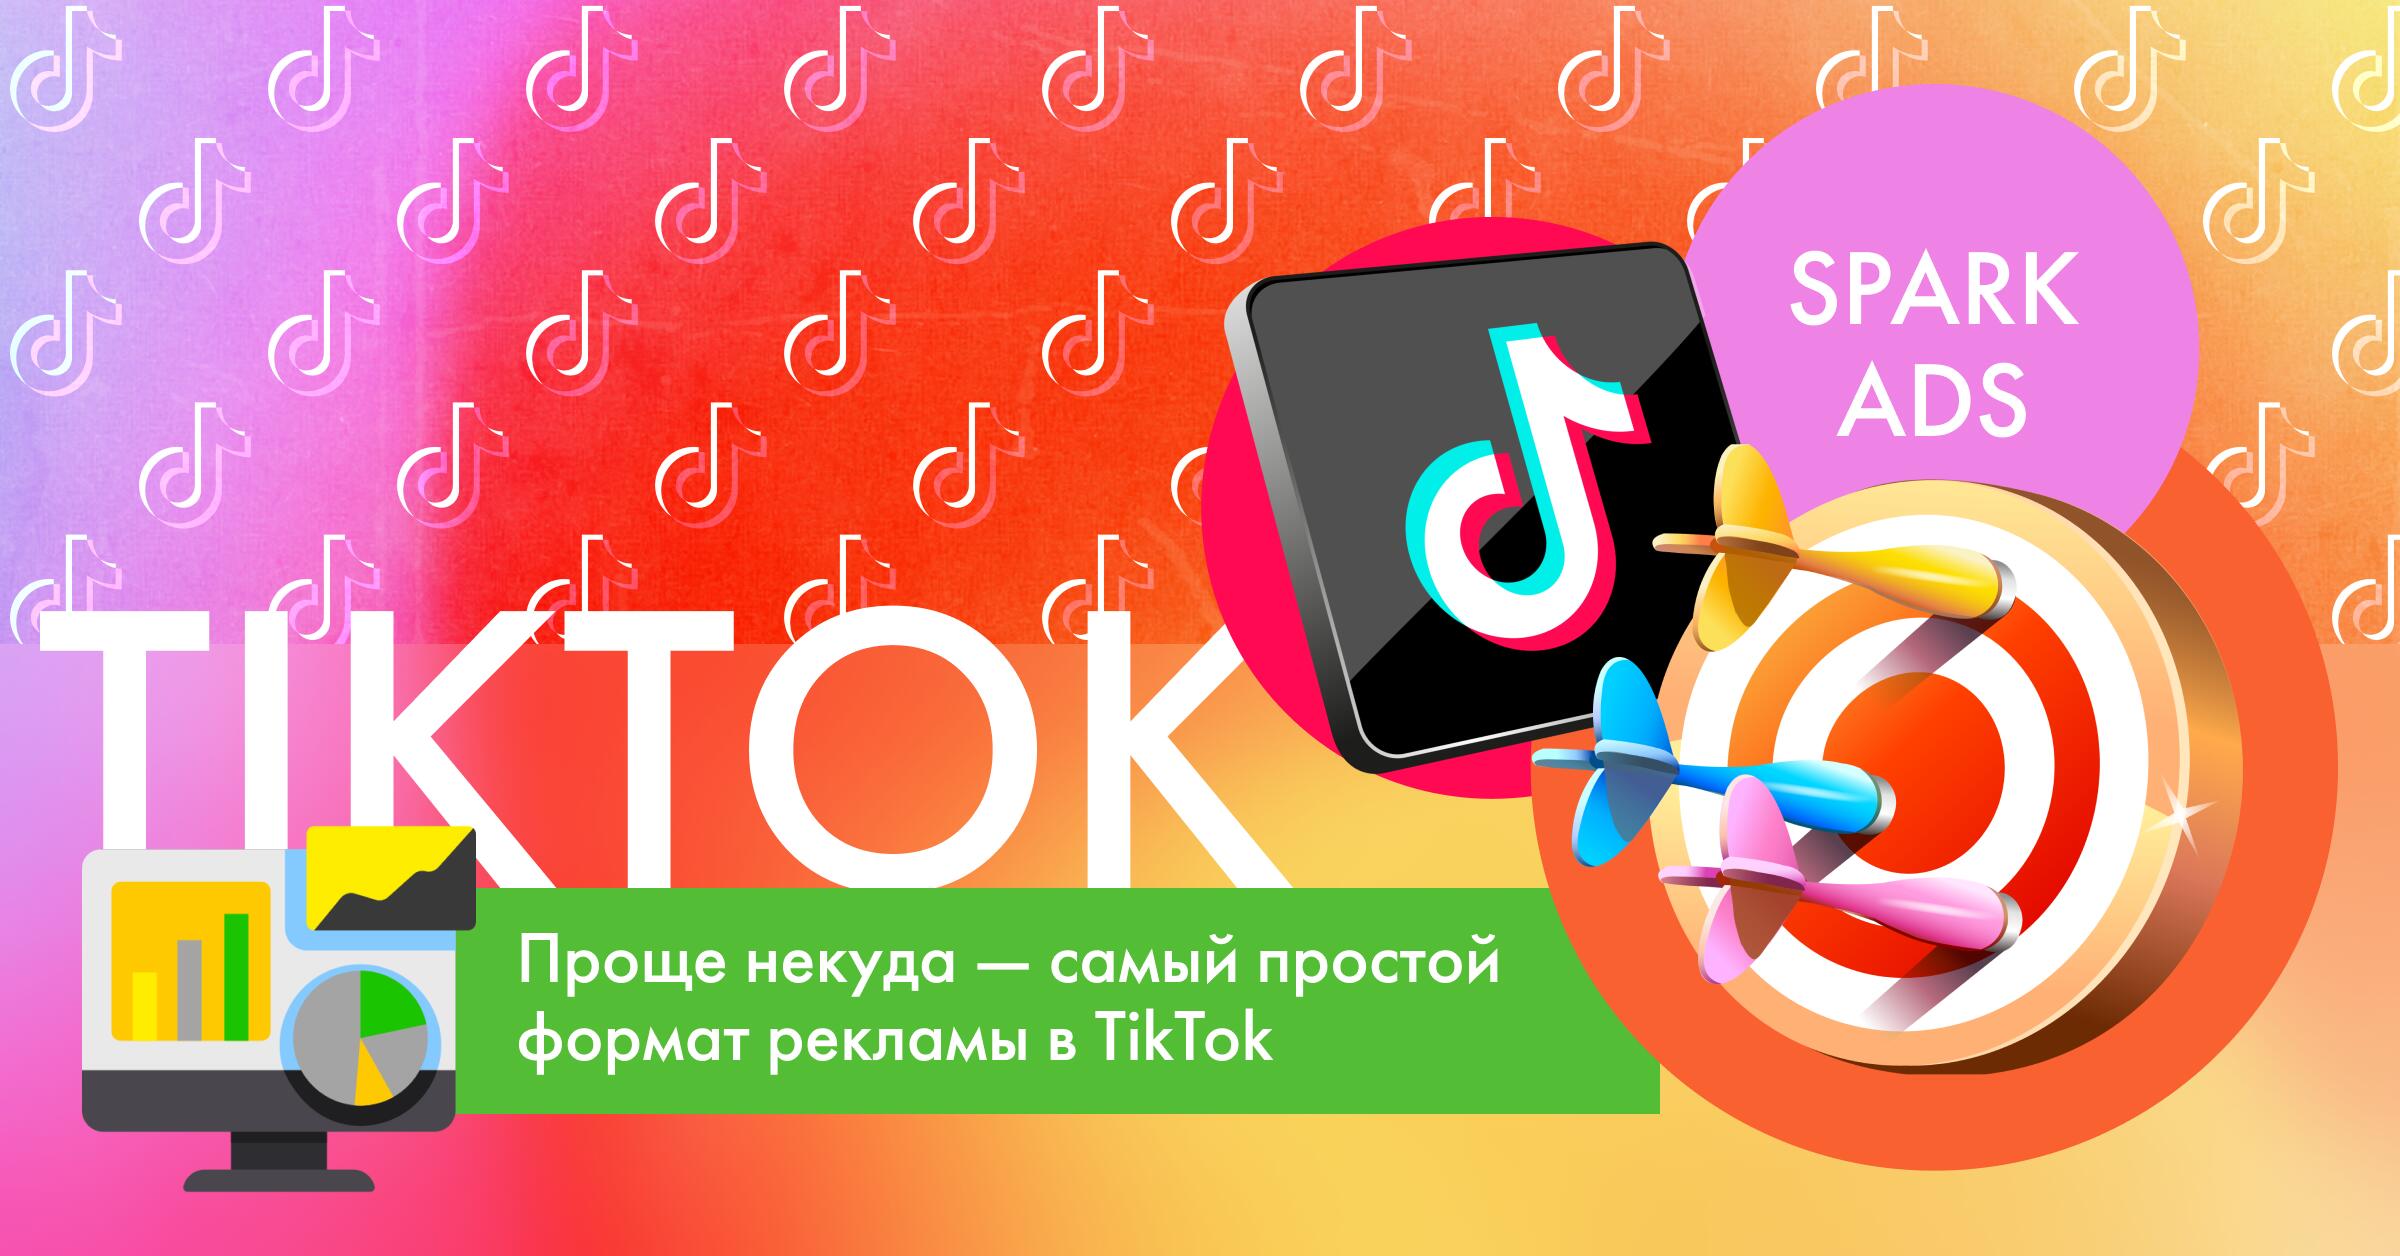 Что такое Spark Ads в TikTok и как их запустить?